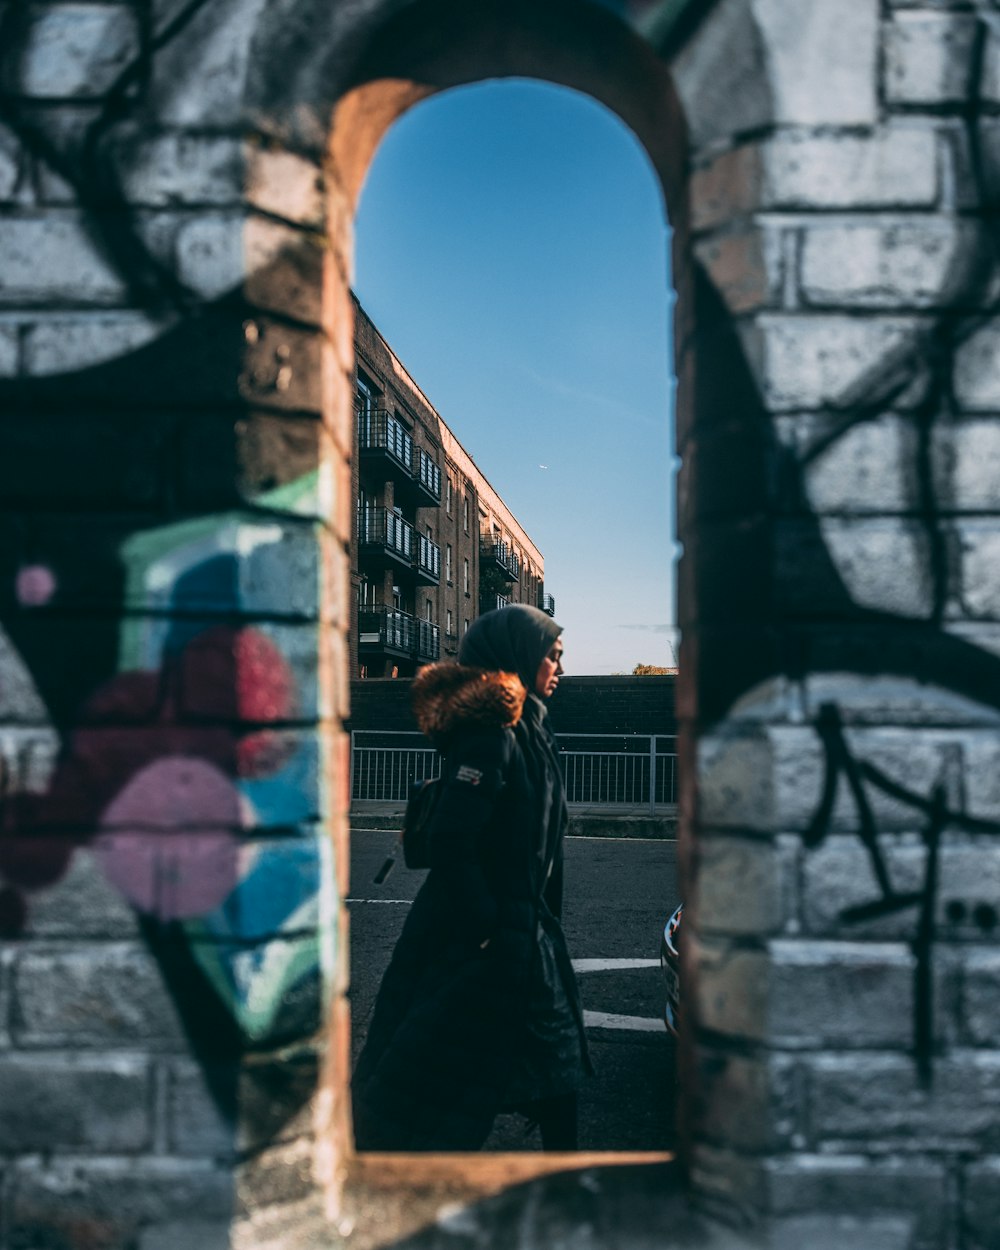 a woman walking past a brick wall with graffiti on it